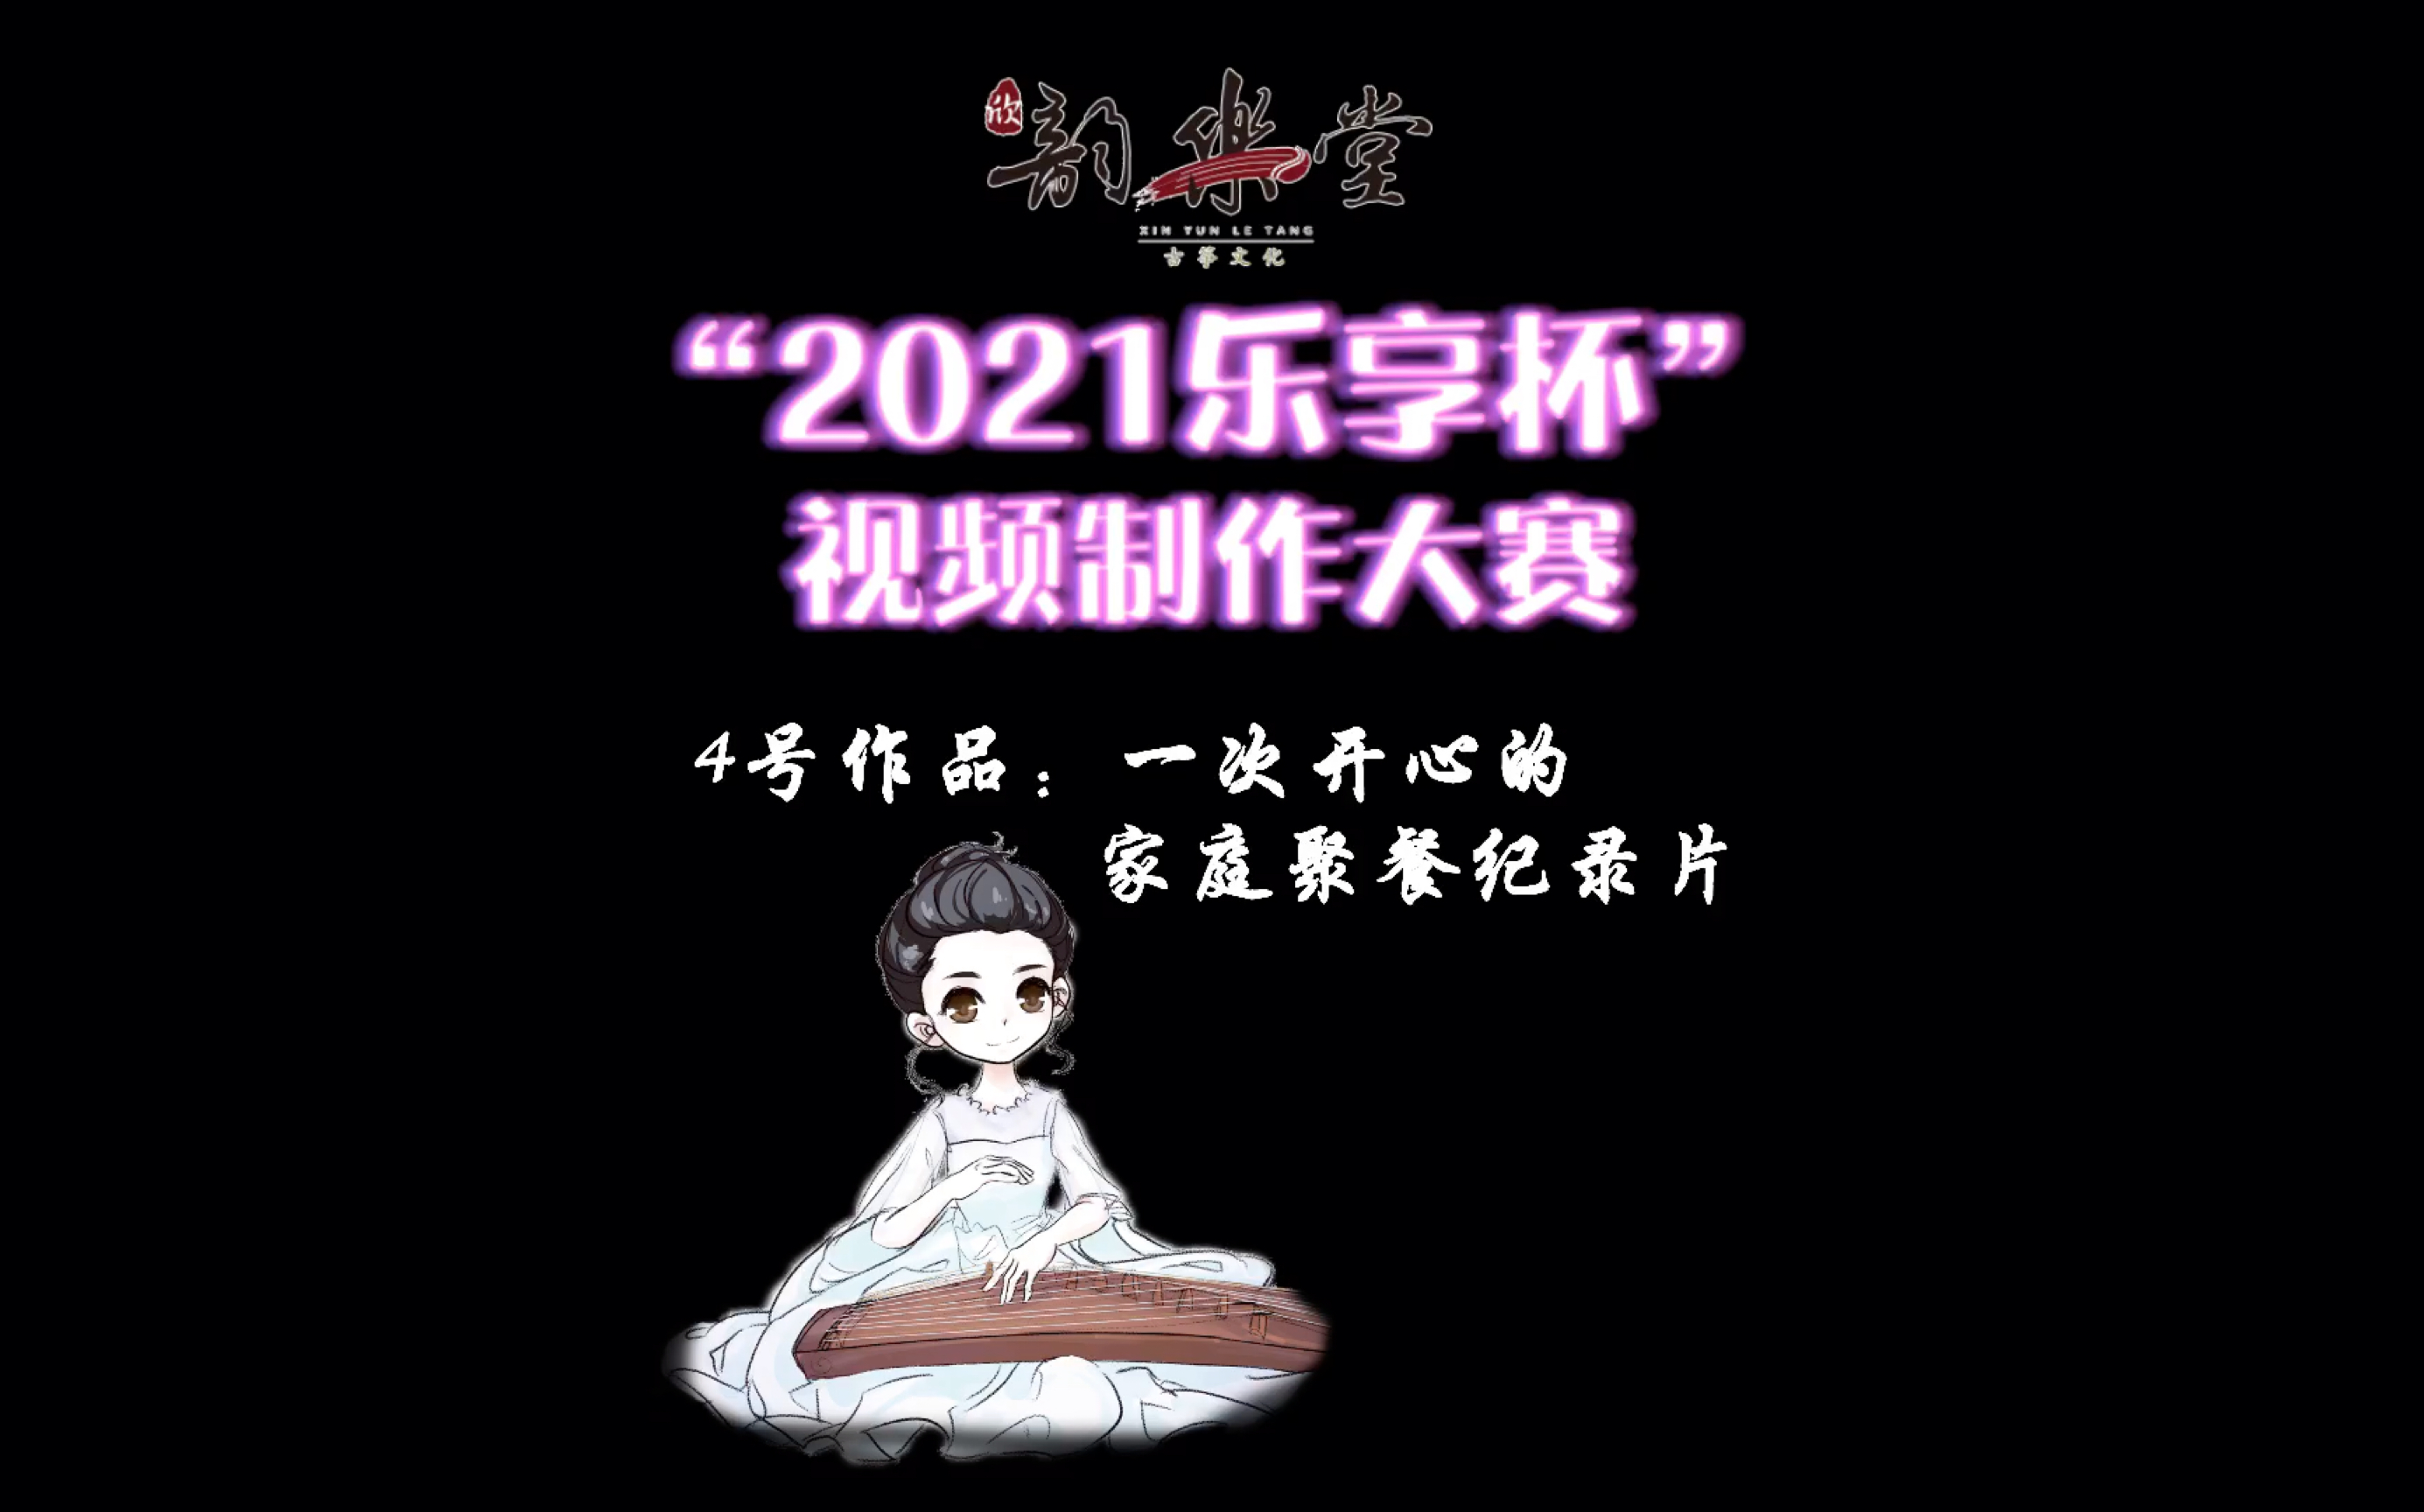 欣韵乐堂“2021乐享杯”视频制作大赛4号作品：一